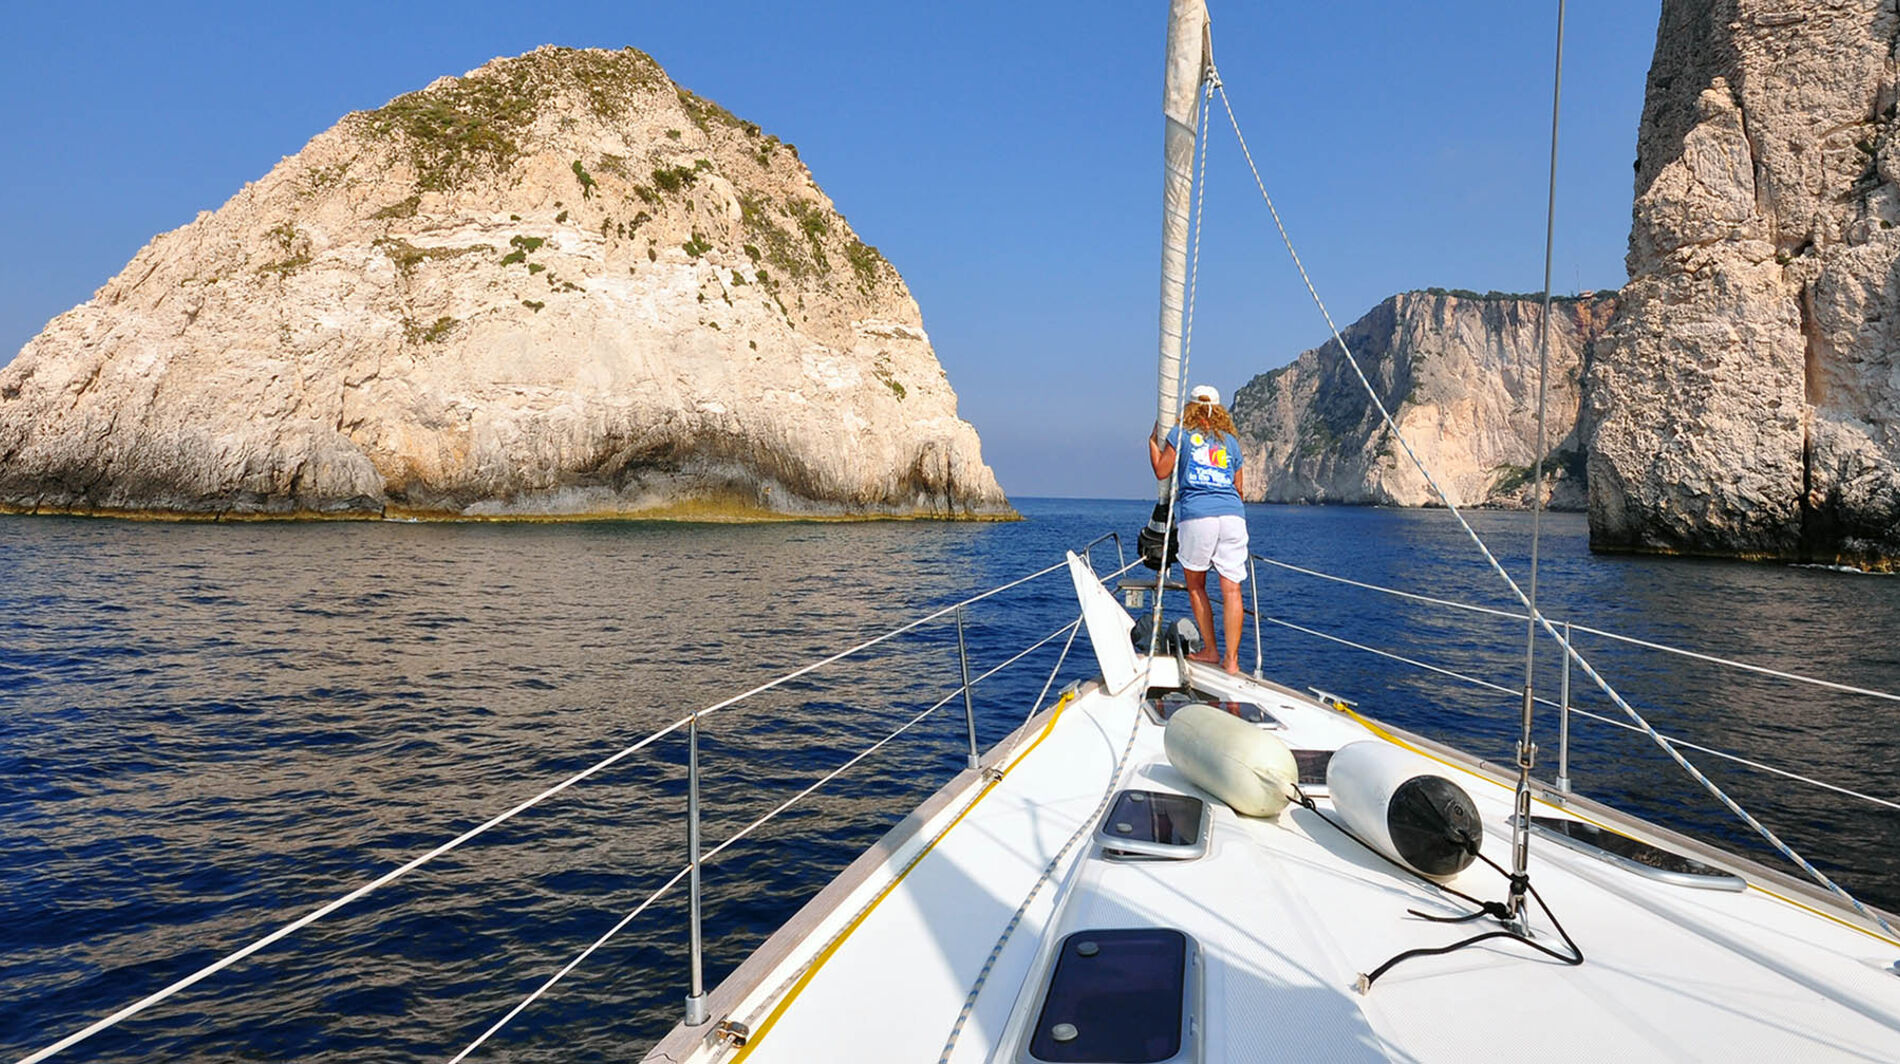 Aboard Ionian islands